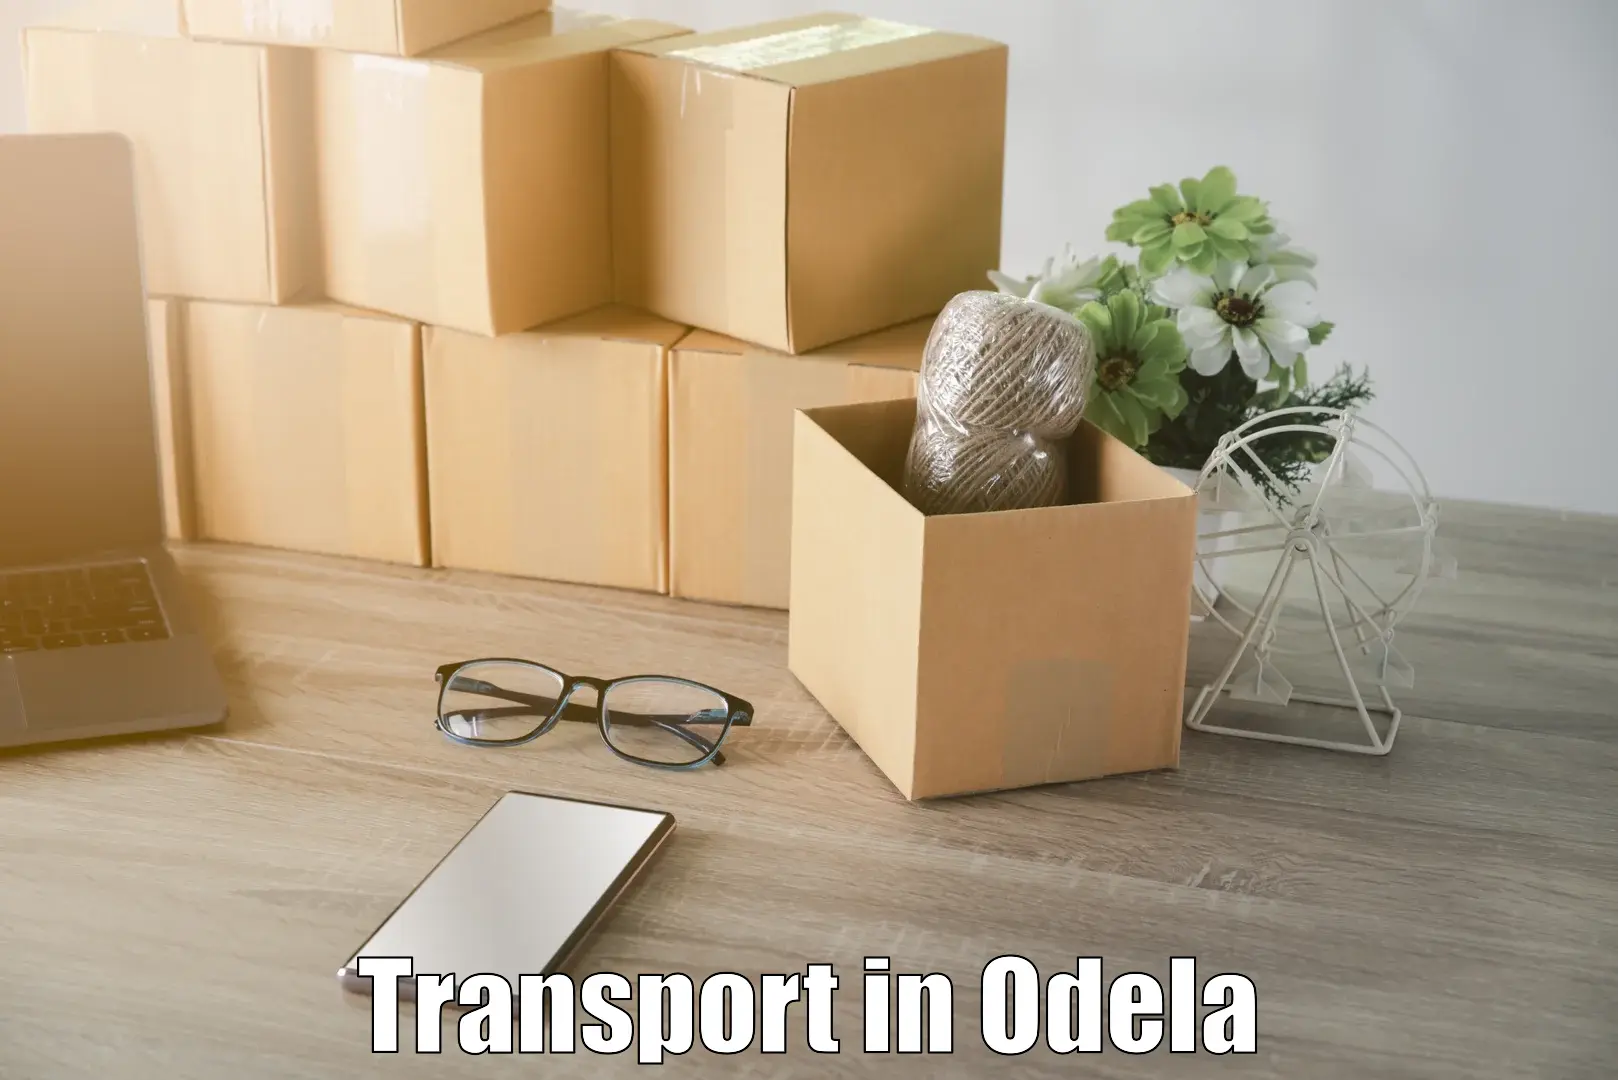 Nearest transport service in Odela